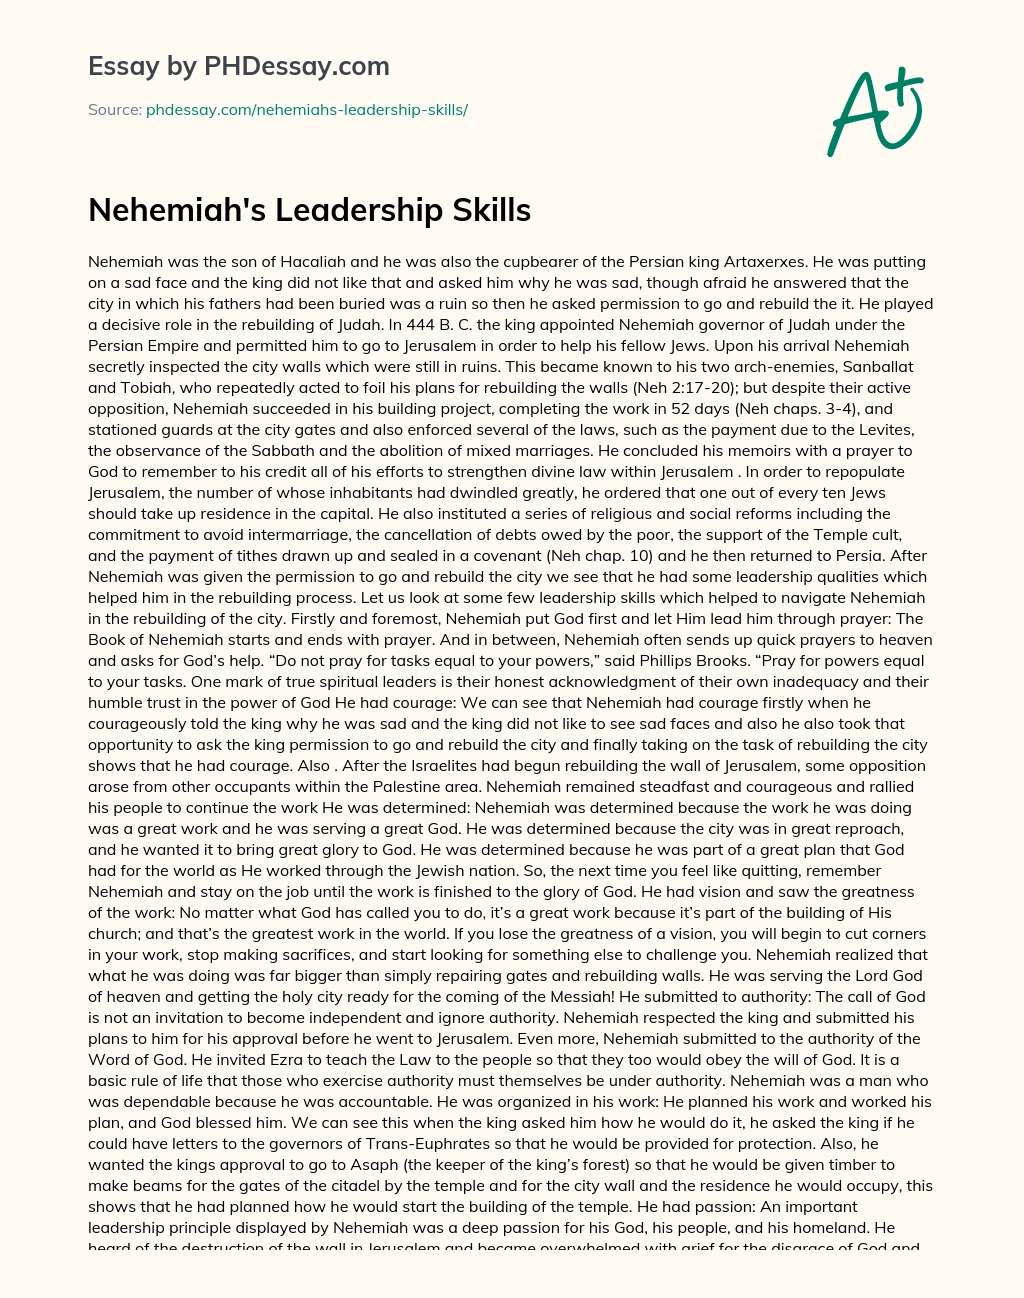 Nehemiah’s Leadership Skills essay